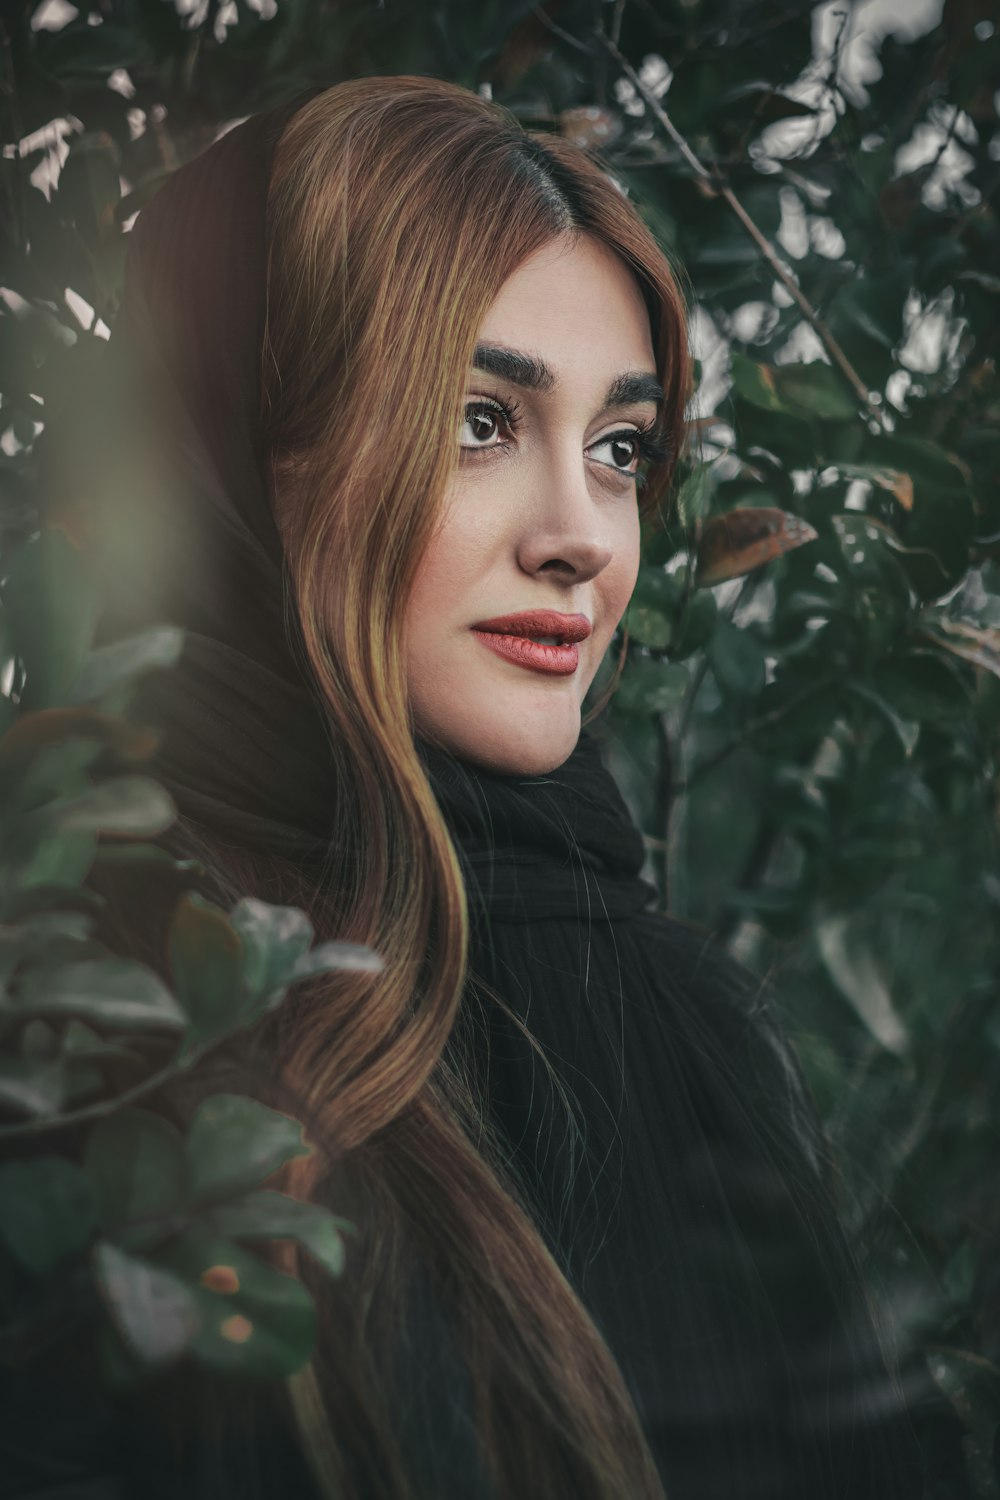 Frau im schwarzen Mantel neben grünen Blättern